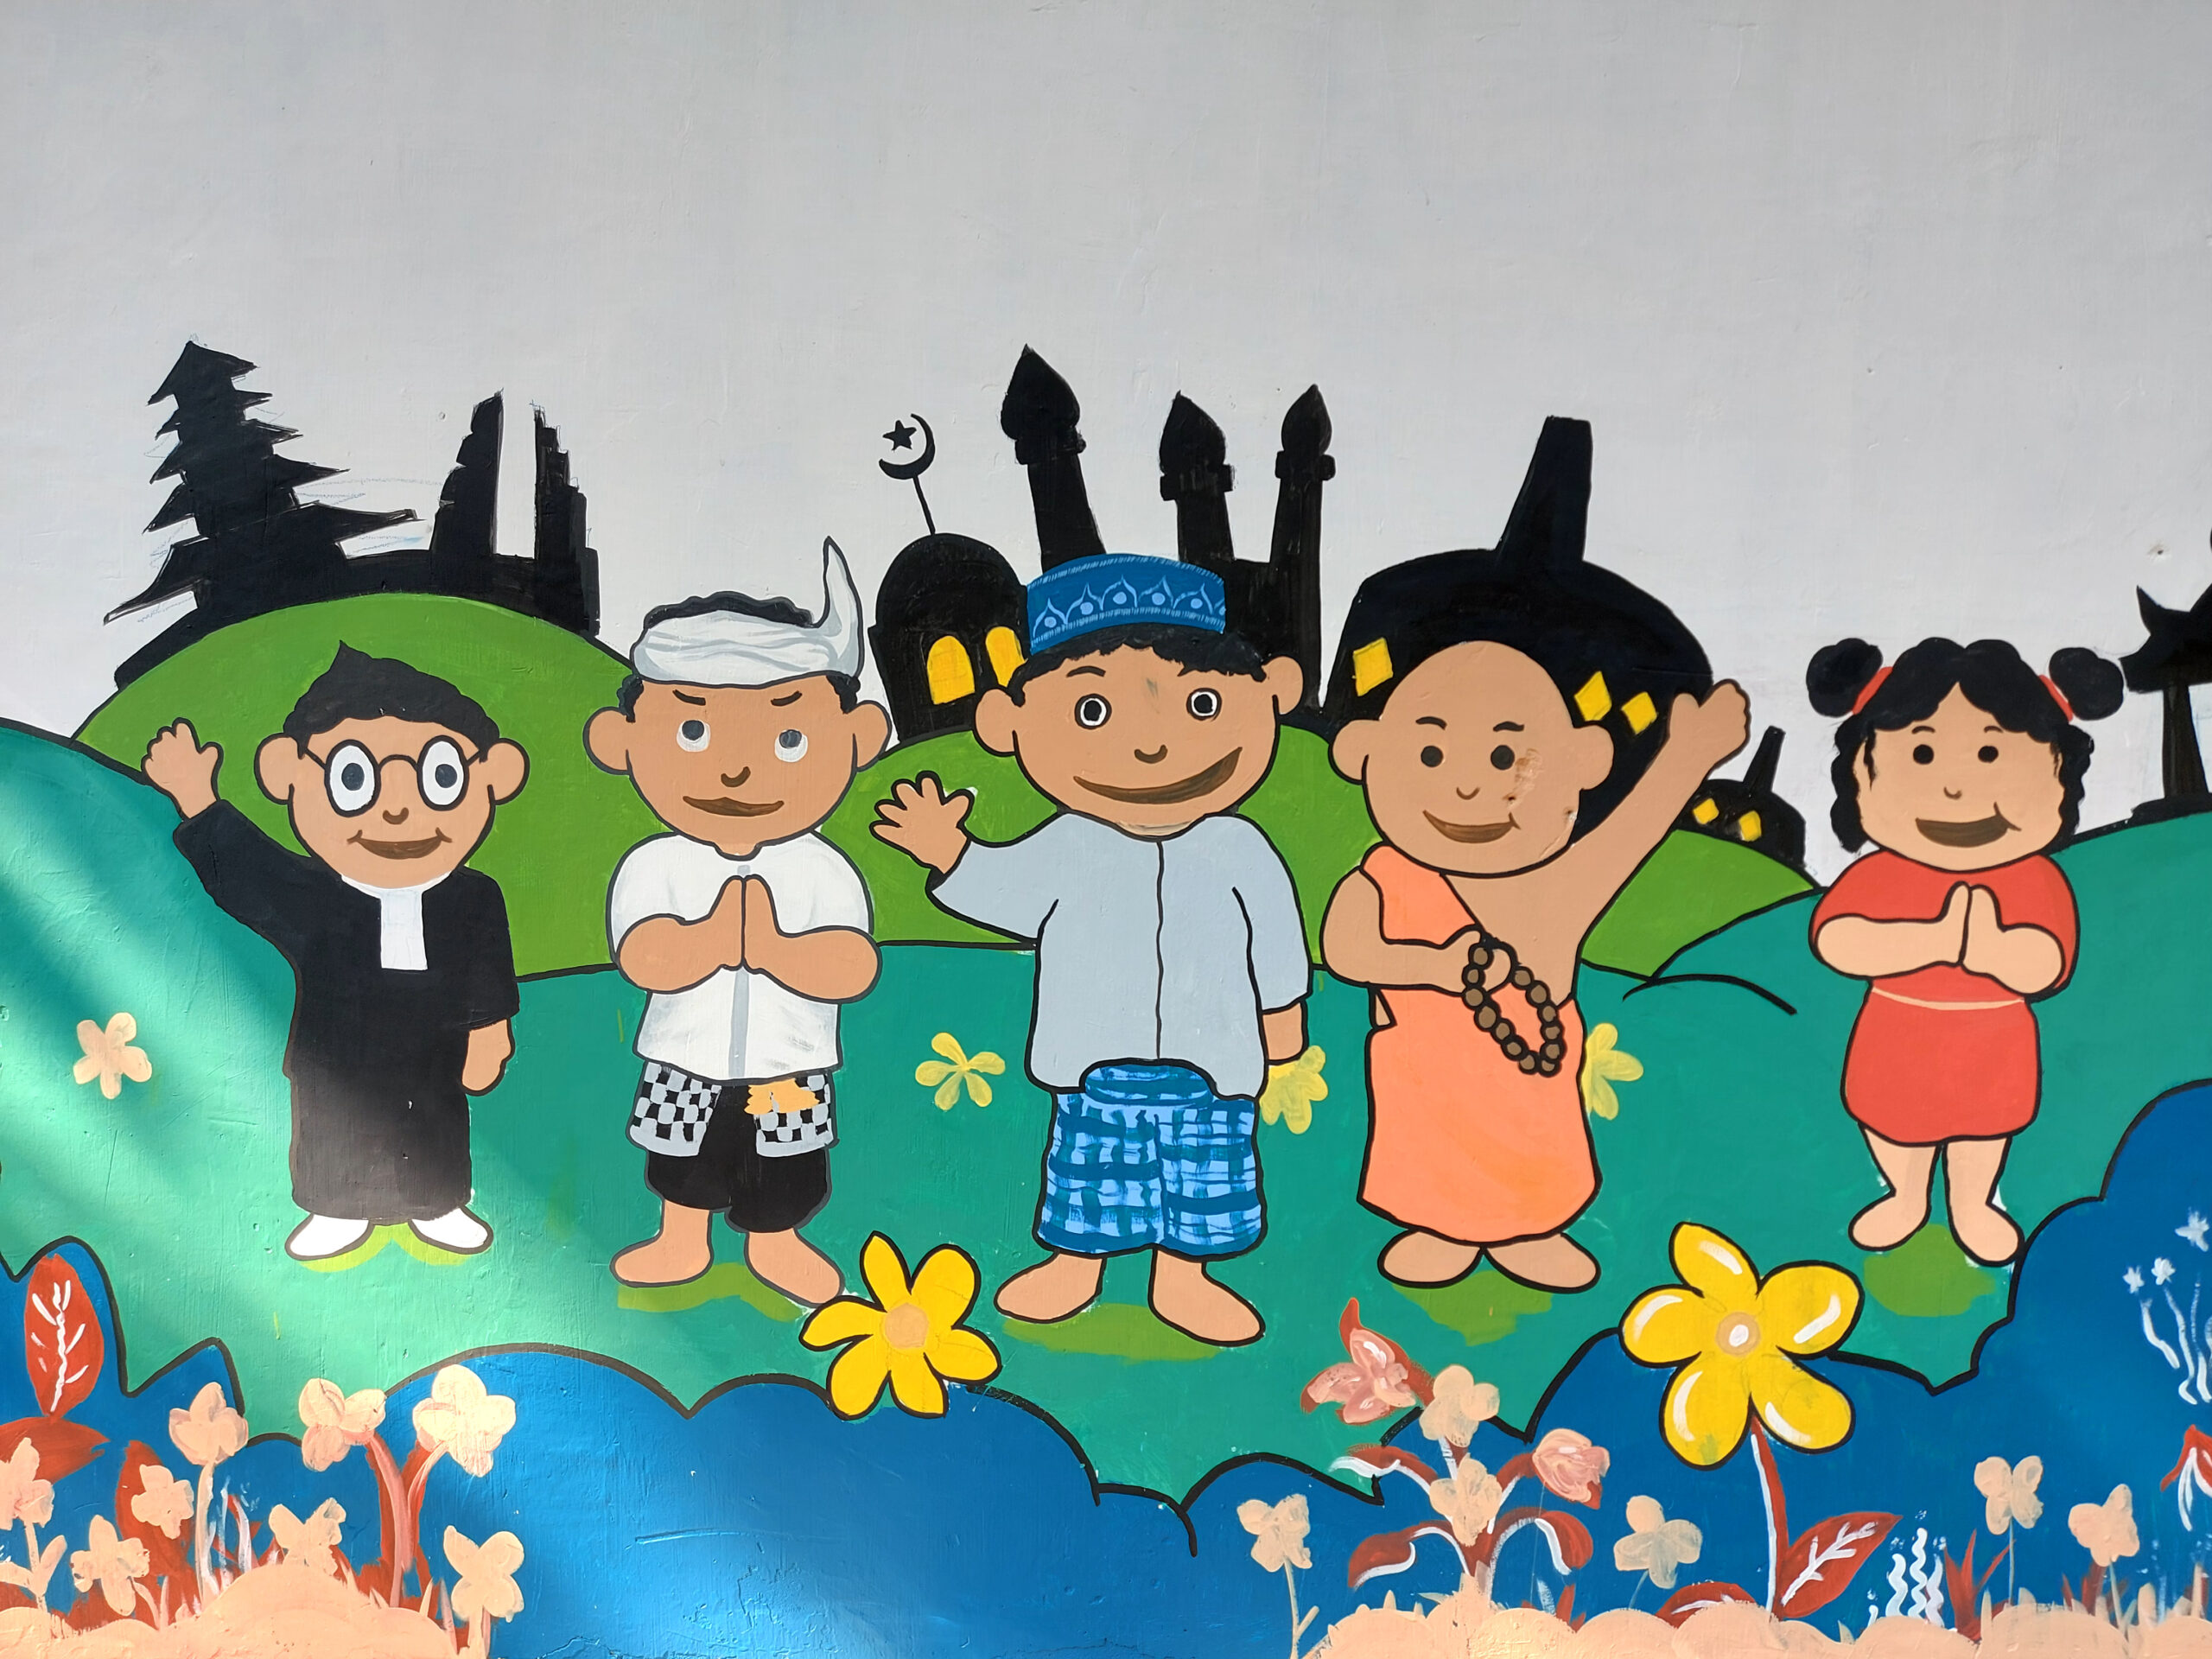 Gambar mural keberagaman suku dan budaya di Indonesia